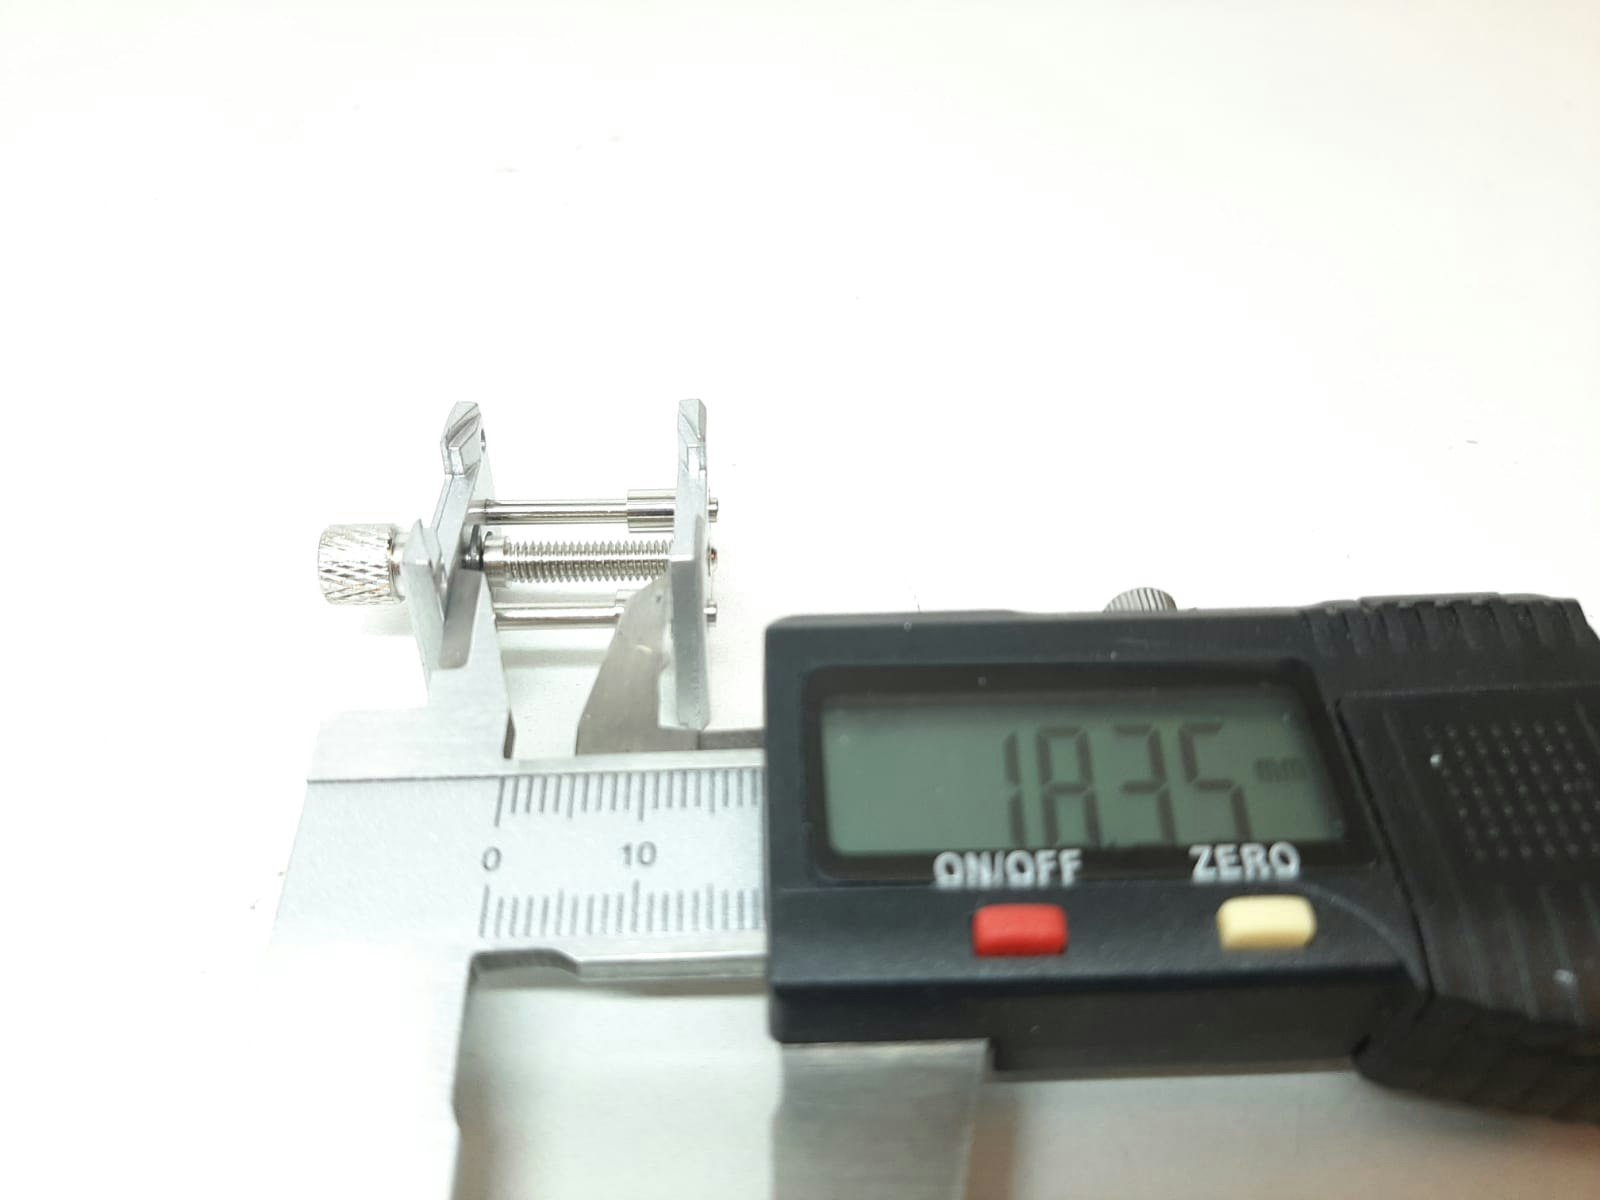 2st skruvstäd/klockhållare i metall (Klocka/urmakeri verktyg)